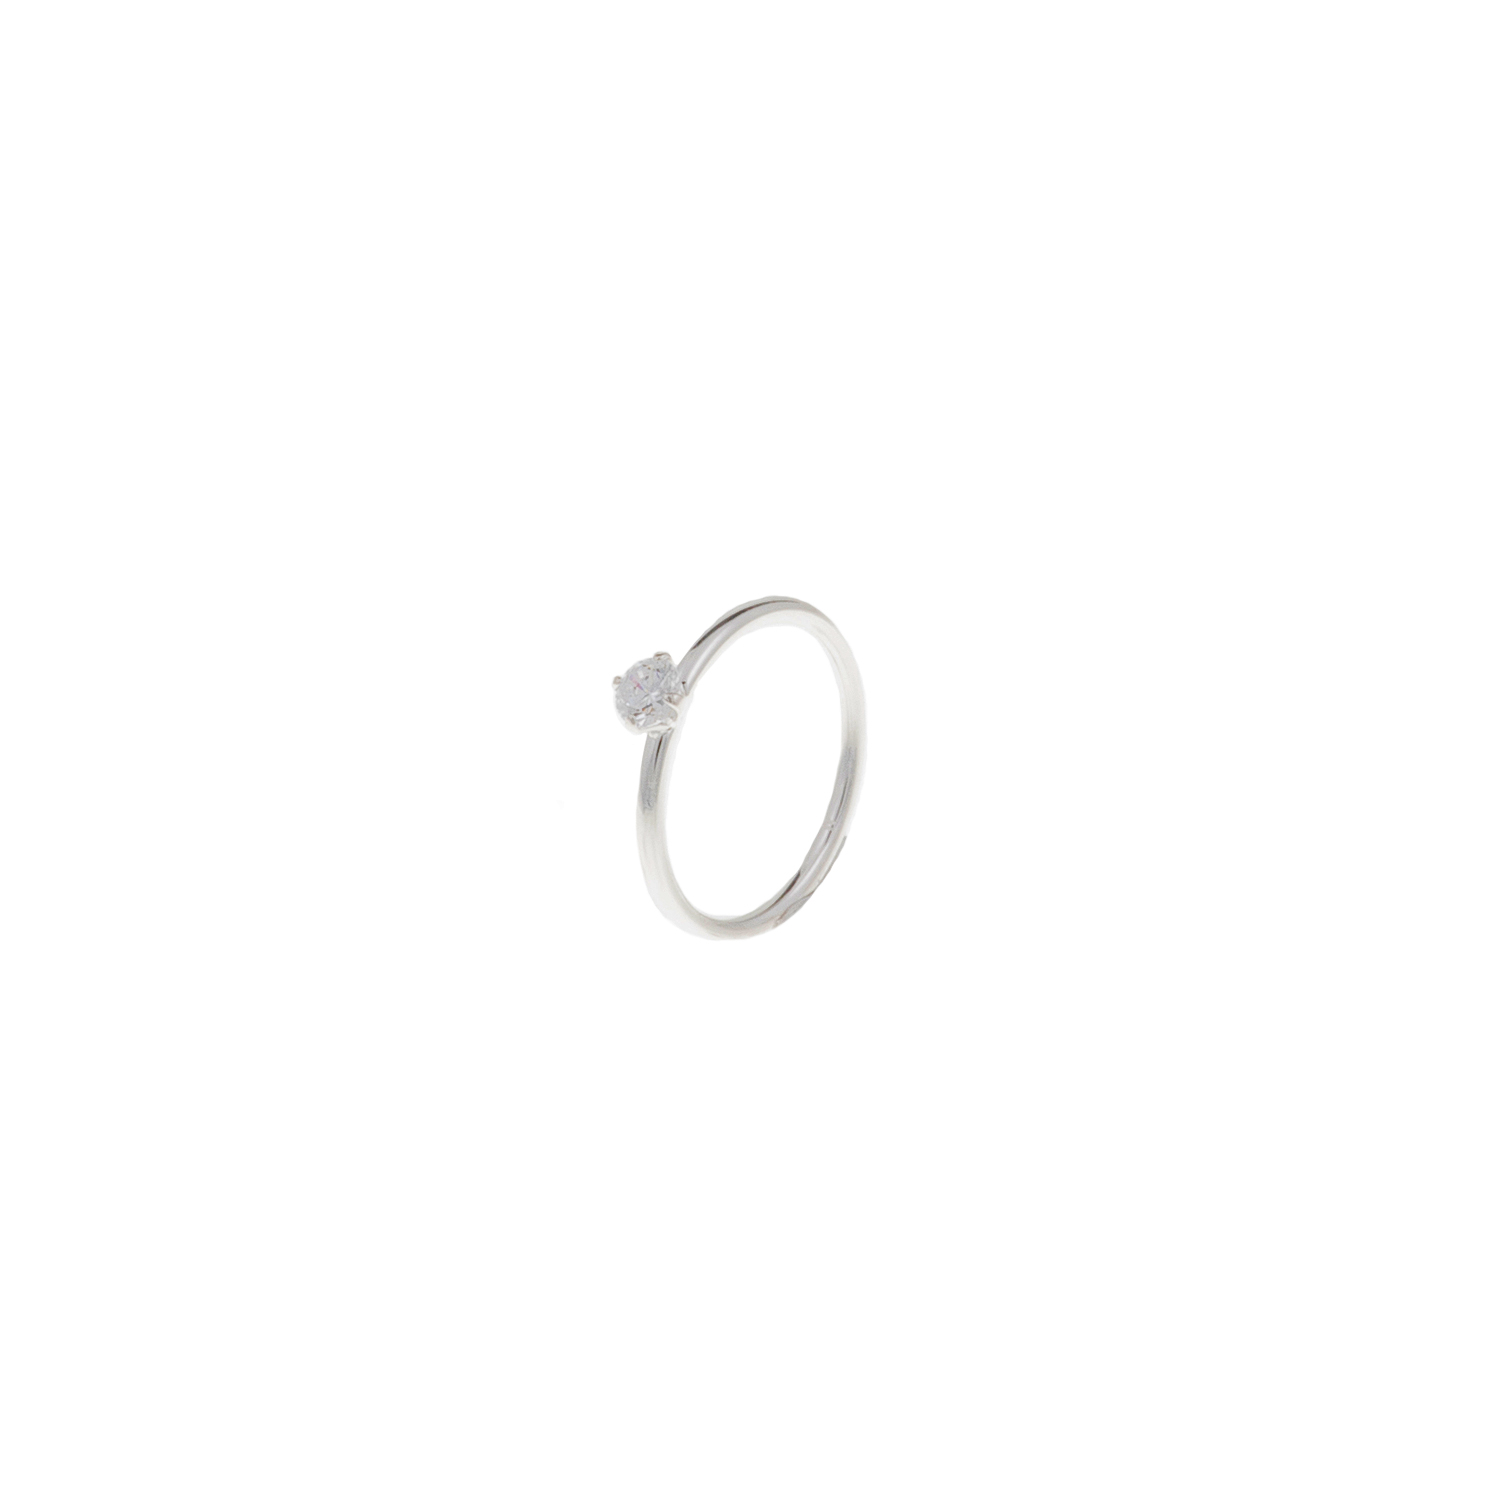 Γυναικεία/Αξεσουάρ/Κοσμήματα/Δαχτυλίδια FOLLI FOLLIE - Δαχτυλίδι Folli Follie σε ασημί απόχρωση με πέτρα